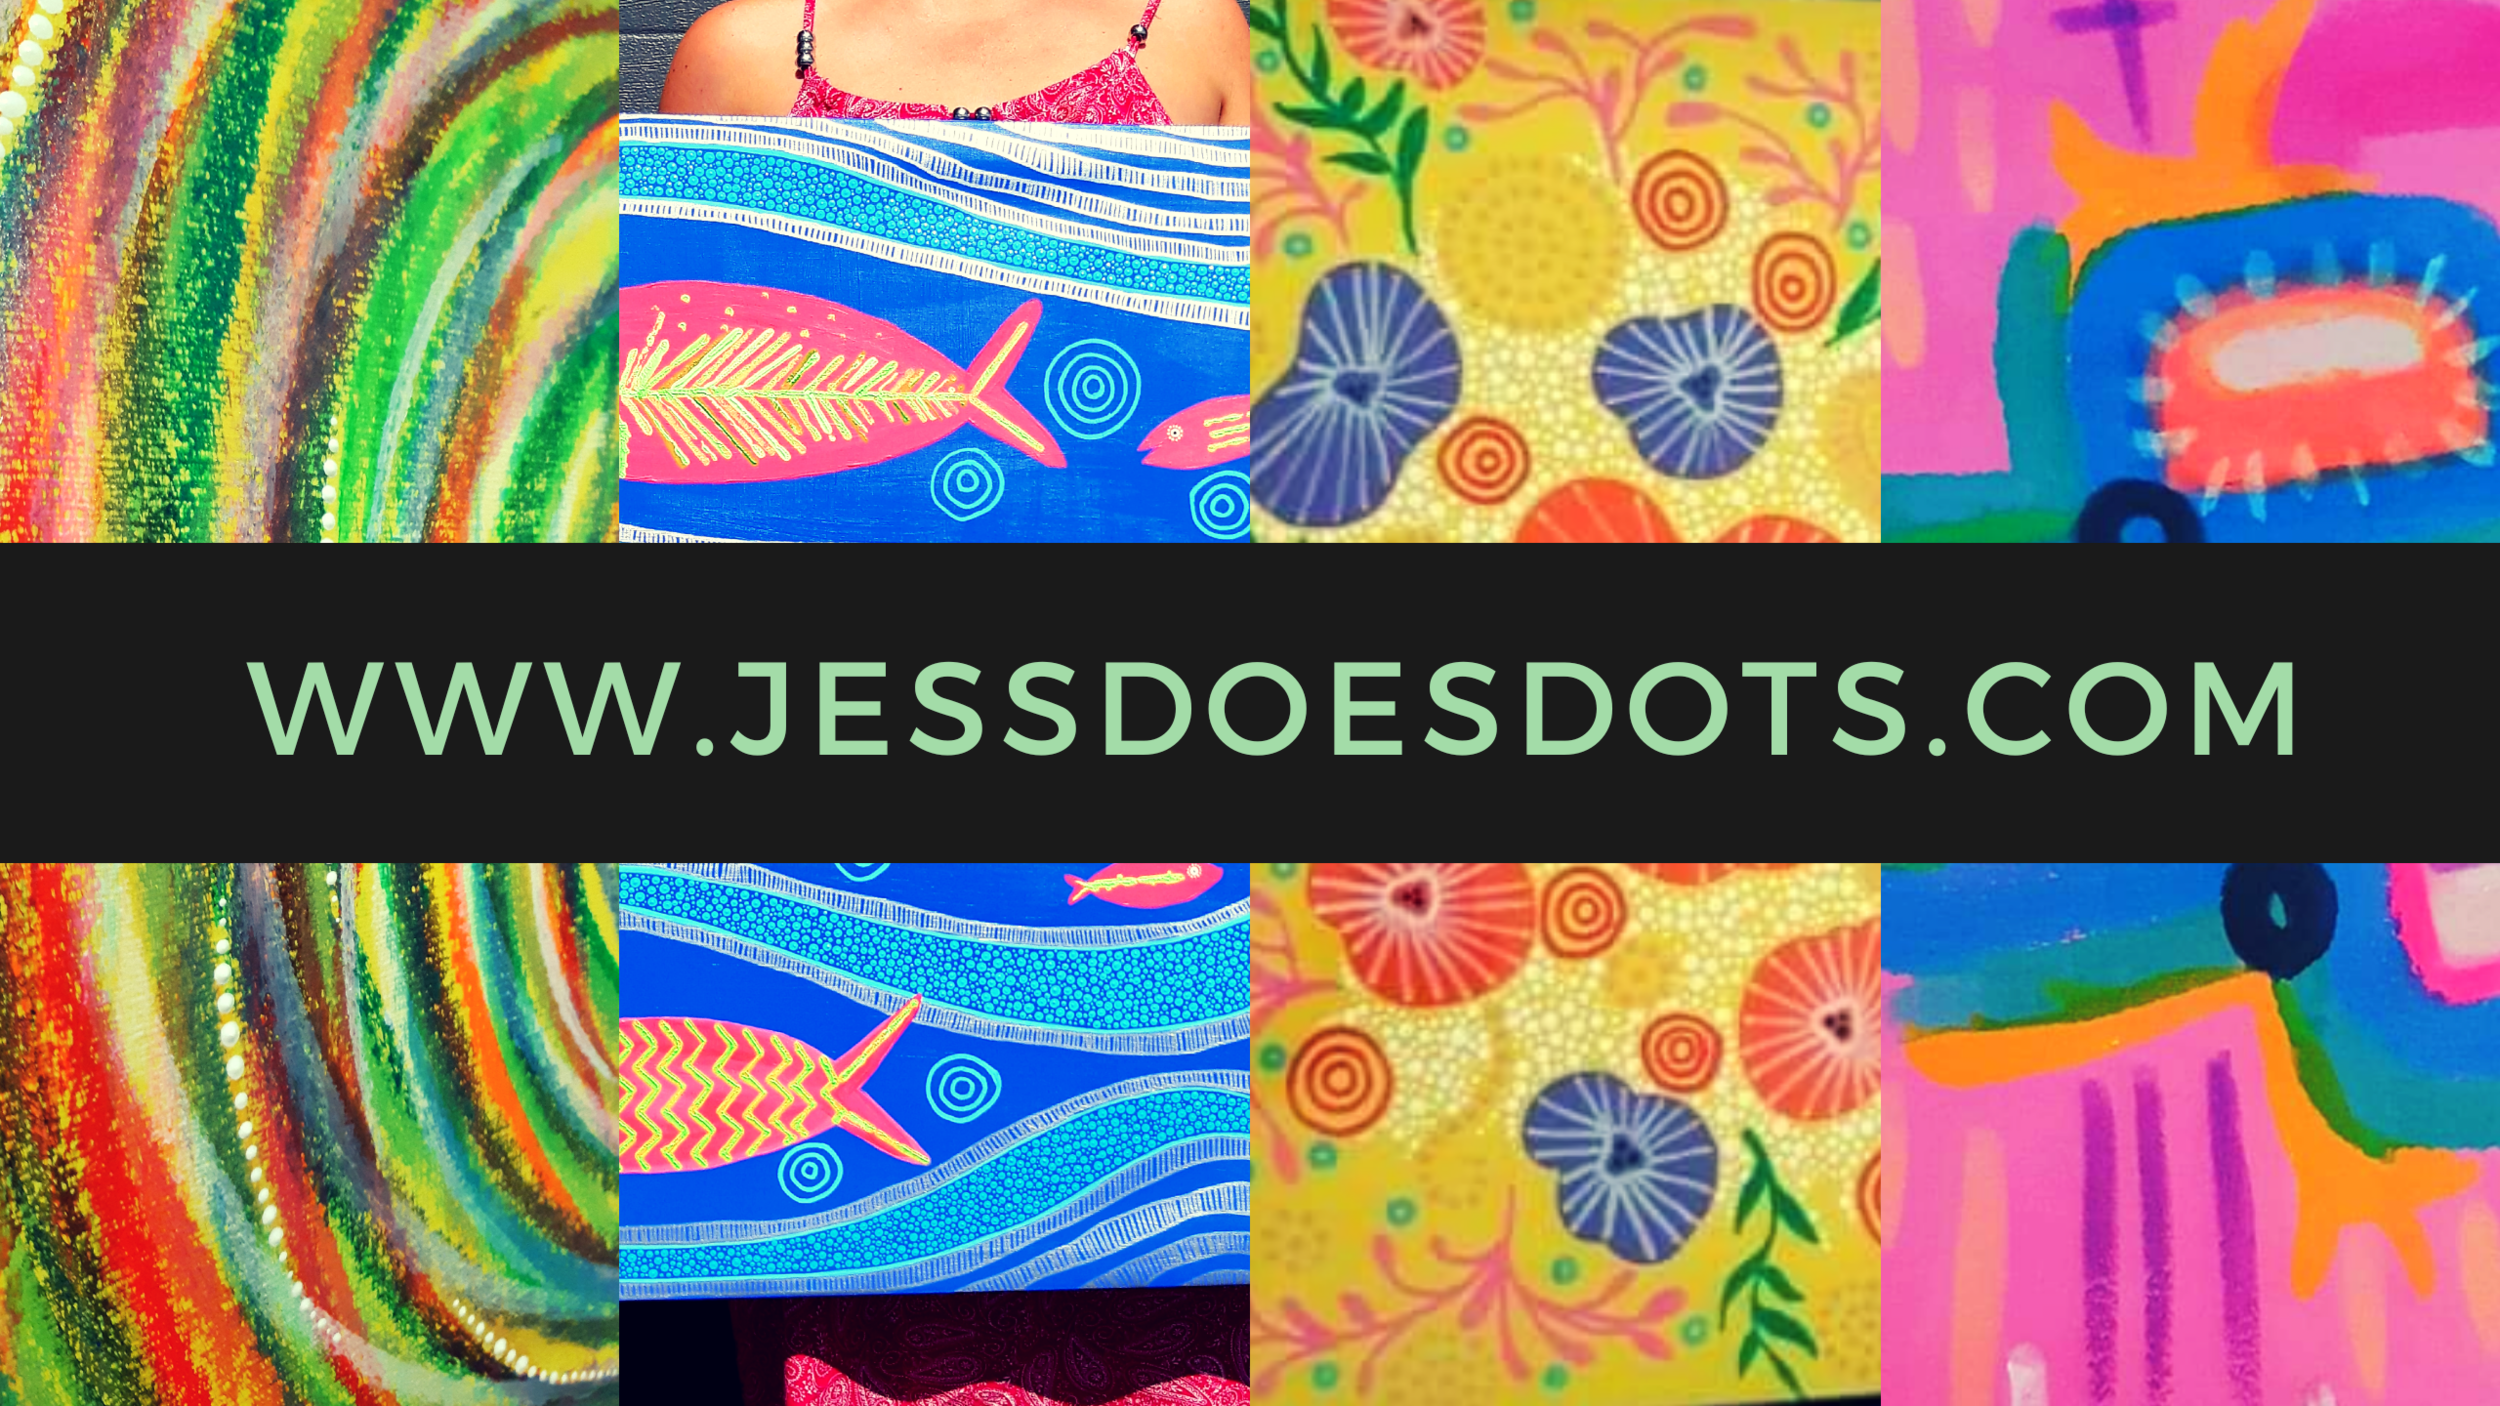 Jess.does.dots